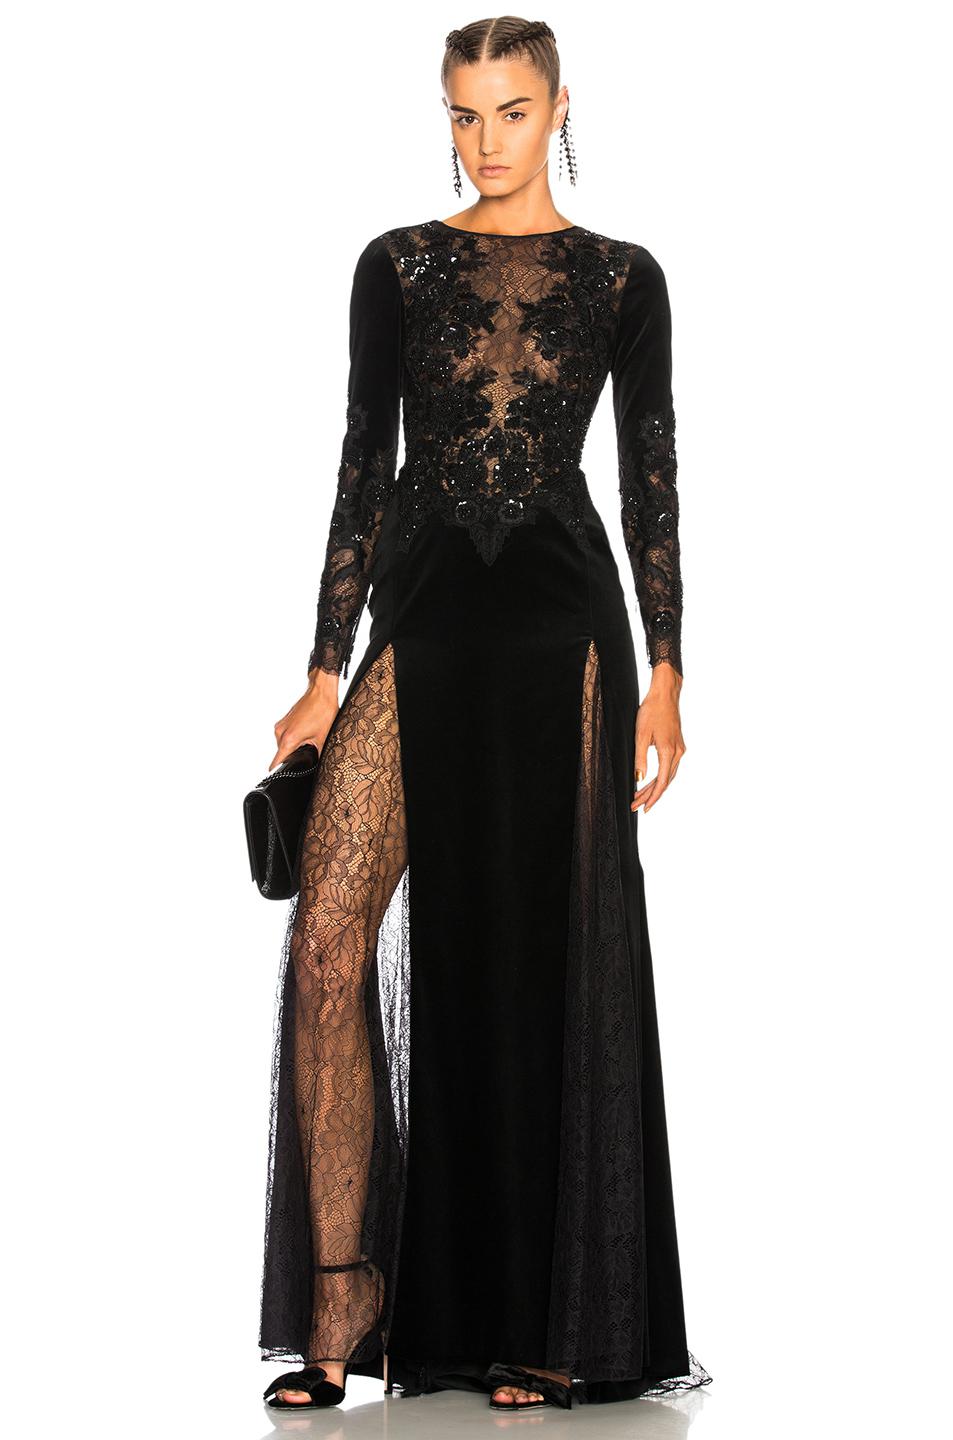 Lyst - Zuhair Murad Mermaid Long Sleeve Embroidered Velvet Dress in Black